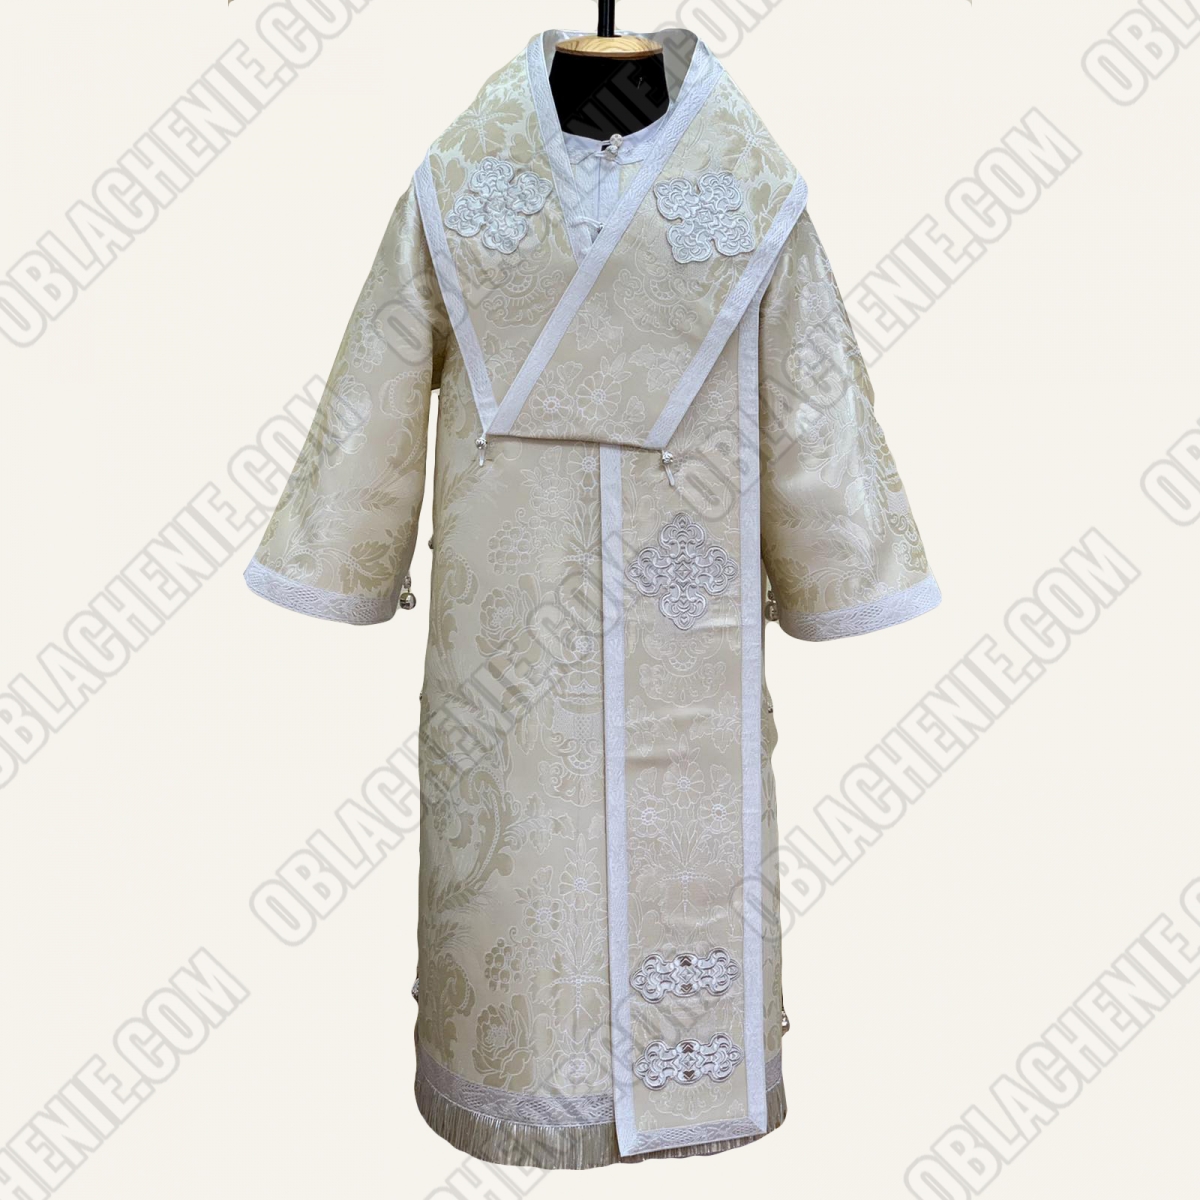 Bishop's vestments 11499